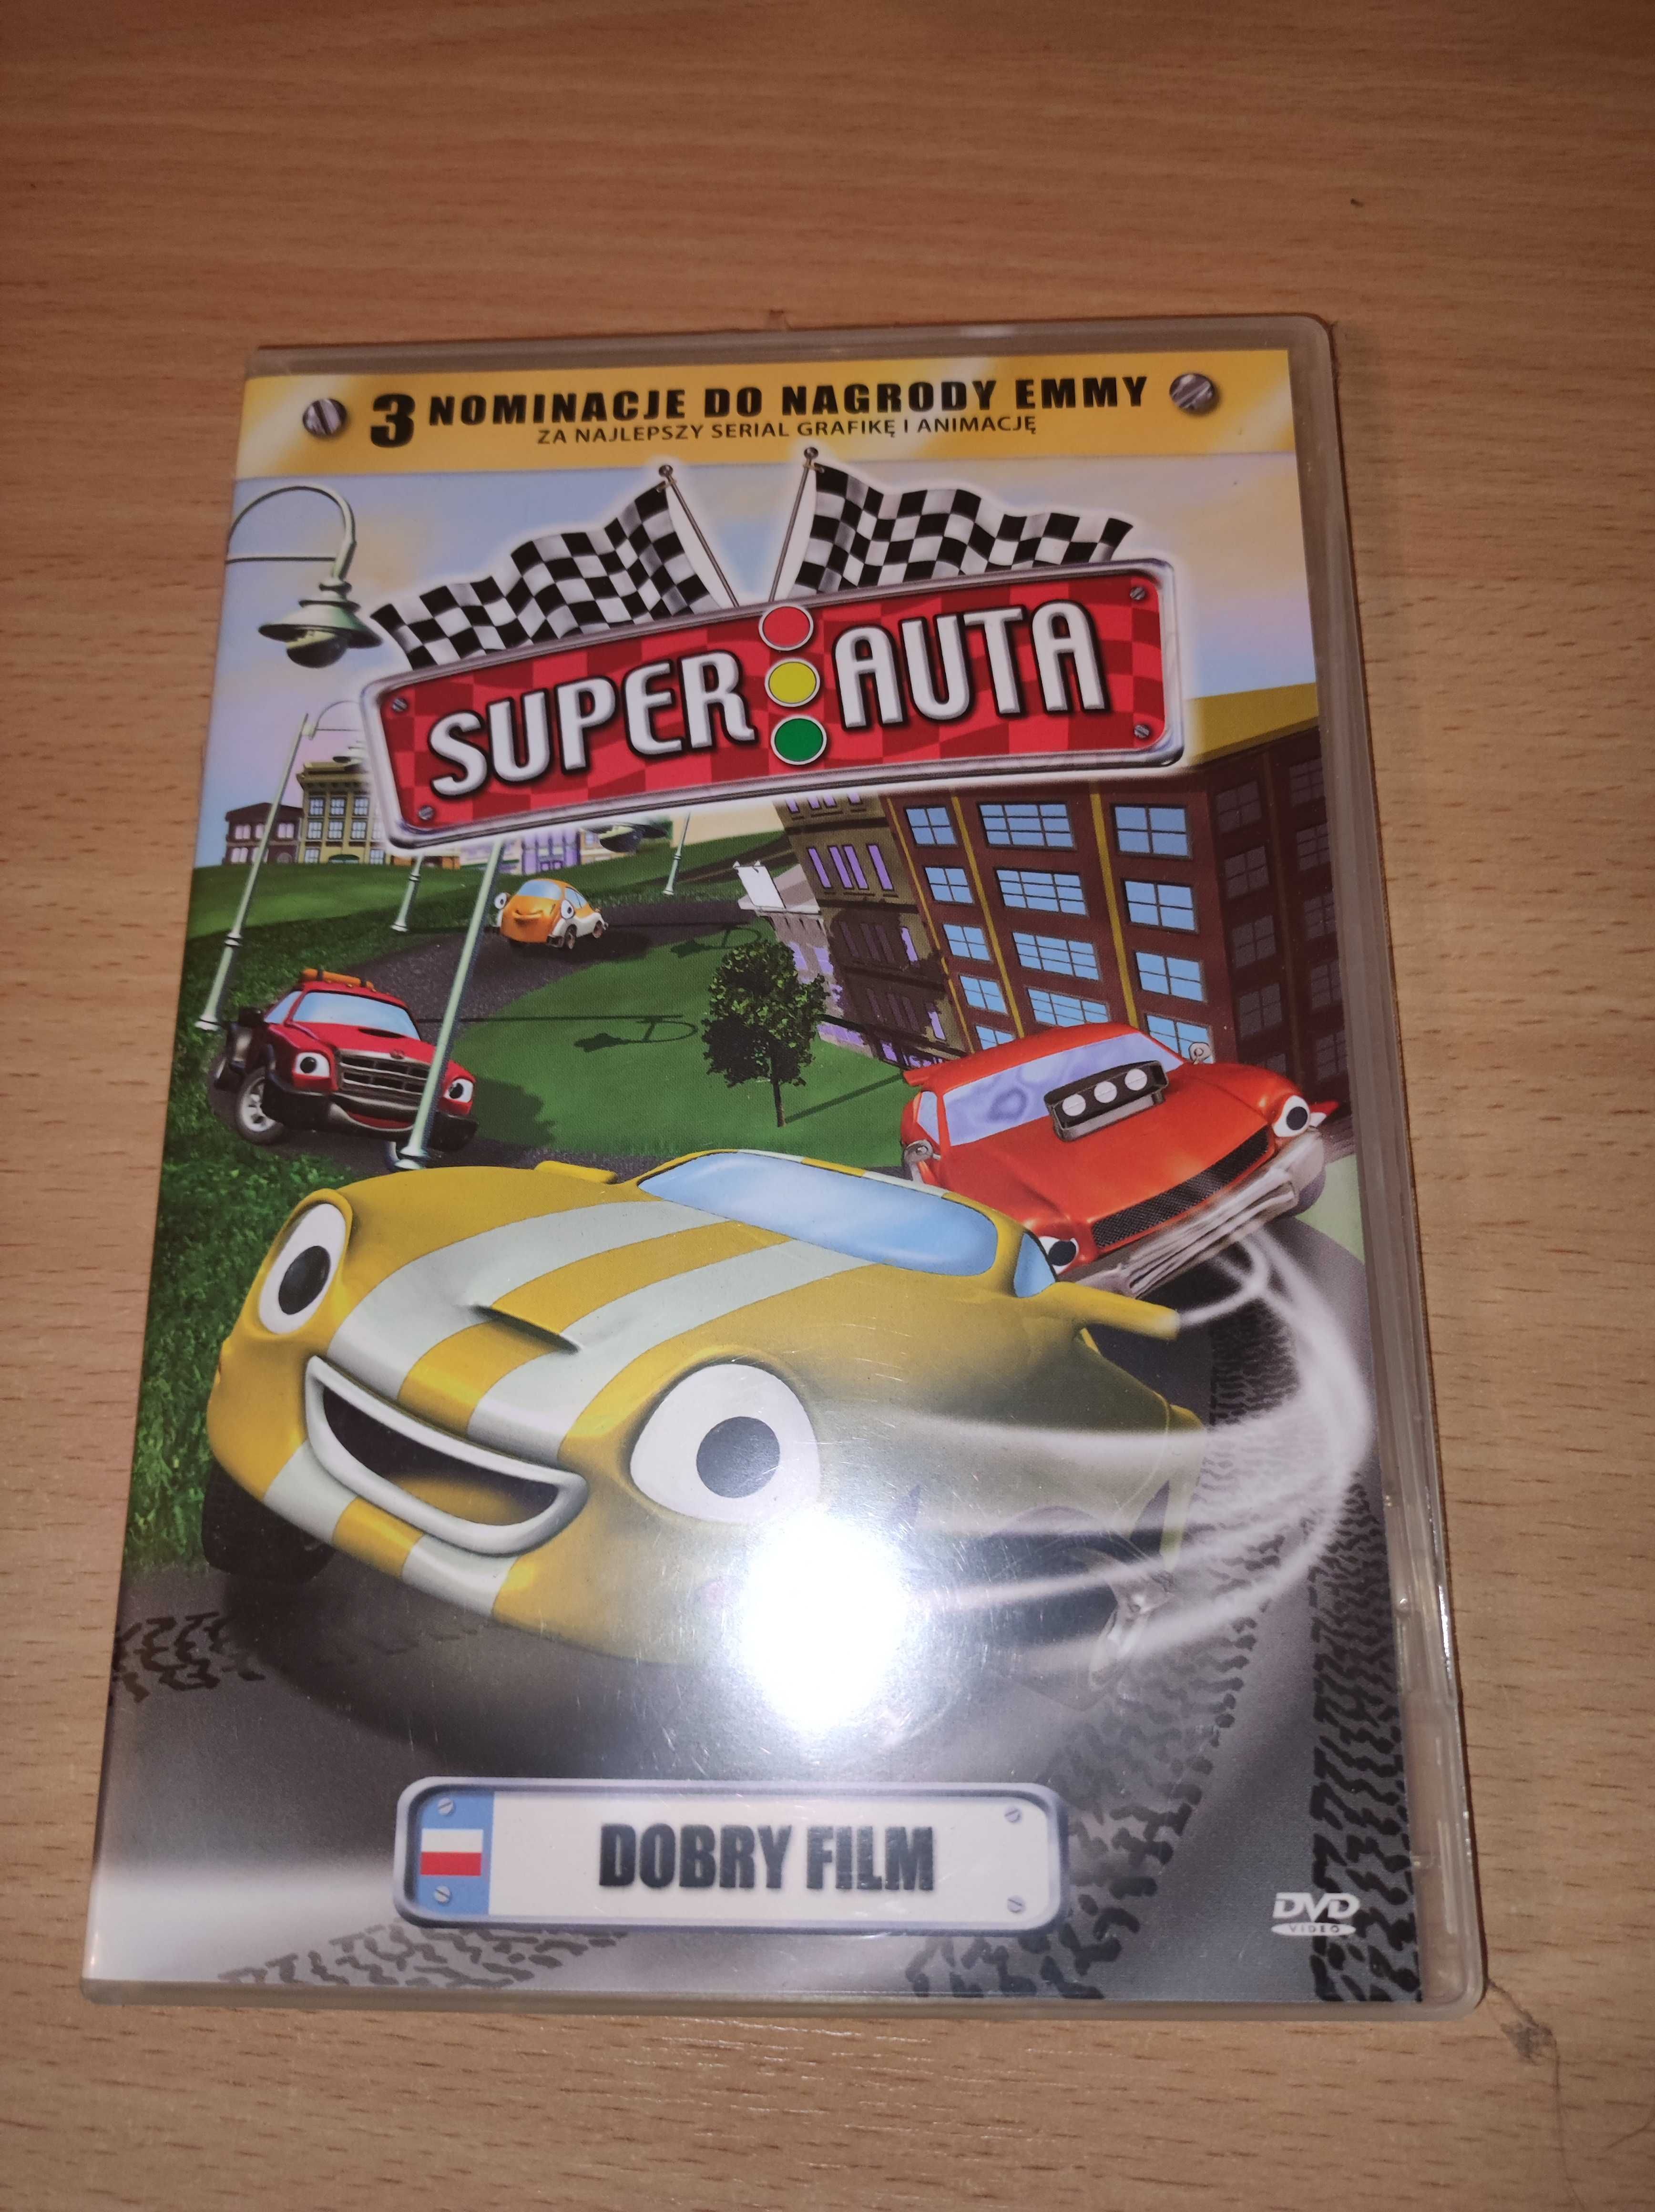 Płyta DVD "Super auta. Dobry film"